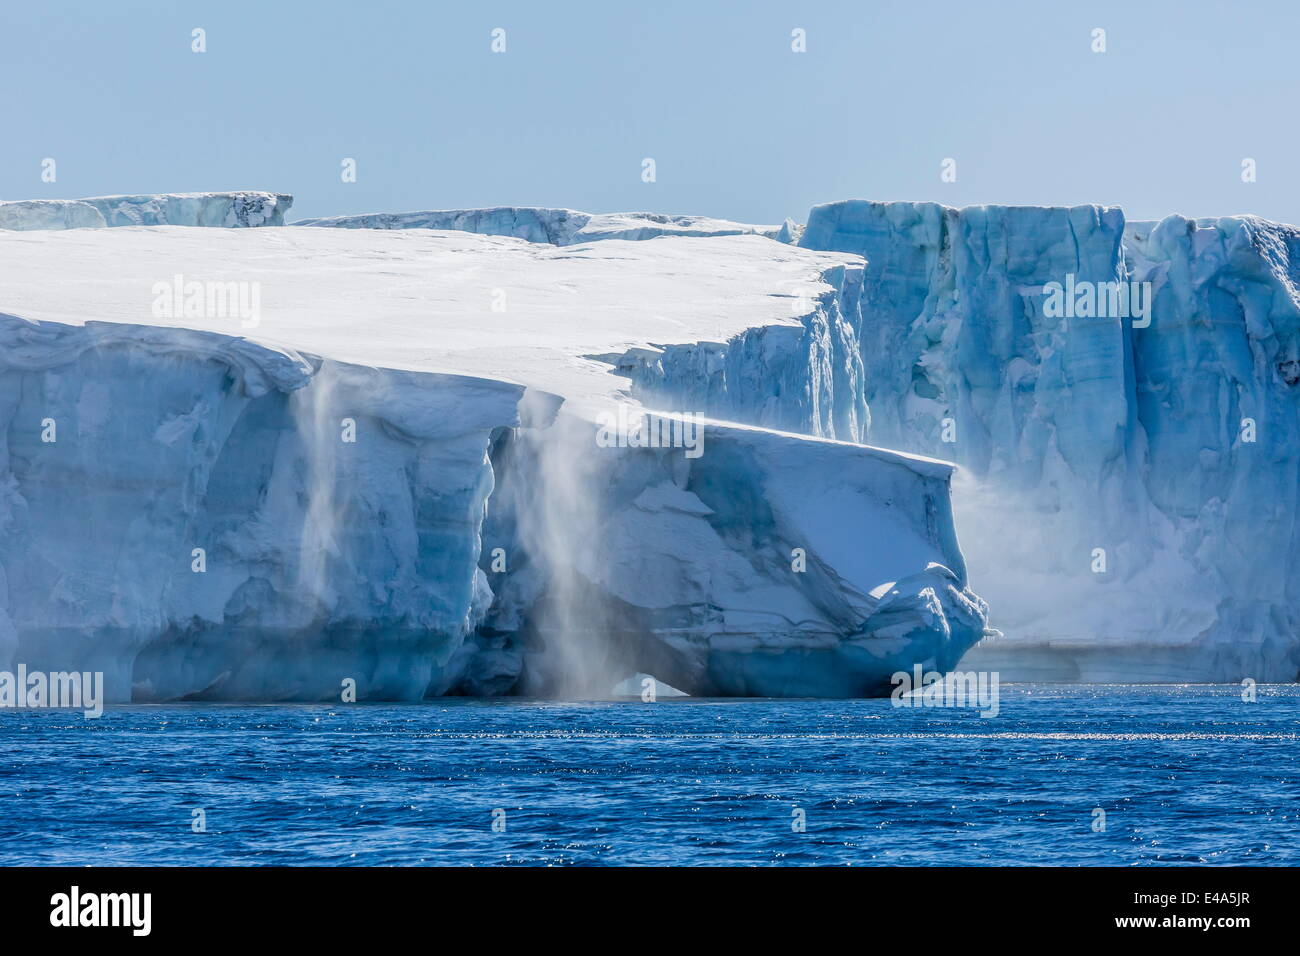 Les vents catabatiques soufflent la neige dans la mer au large de la face du glacier à Brown Bluff, mer de Weddell, l'Antarctique, régions polaires Banque D'Images